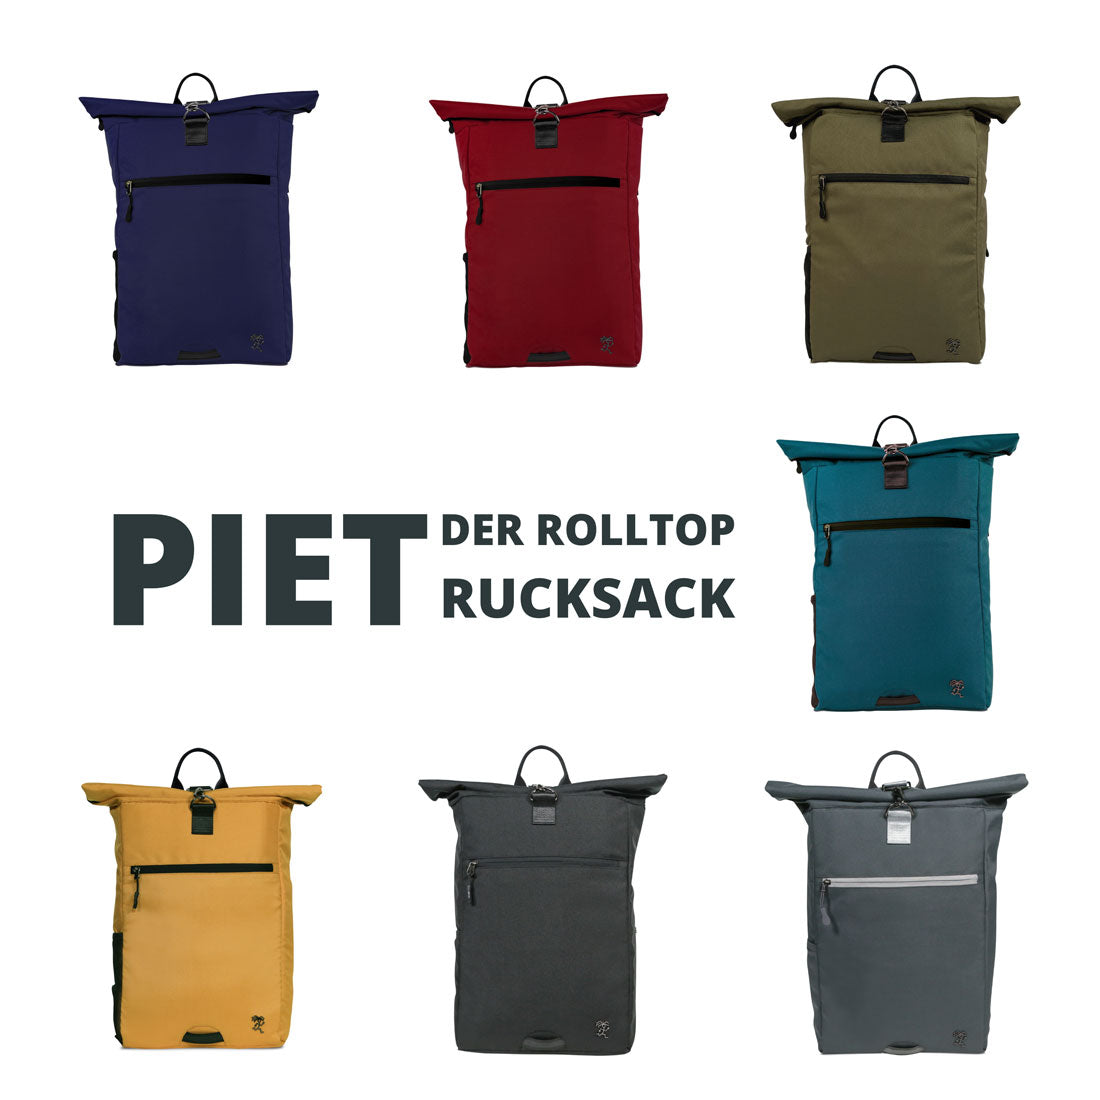 Aktuelle Farbkollektion des FUCHS und REBELL PIET Rolltop Rucksacks: dunkelblau, rot, gruen, petrolblau, dunkelgrau, schwarz und senfgelb